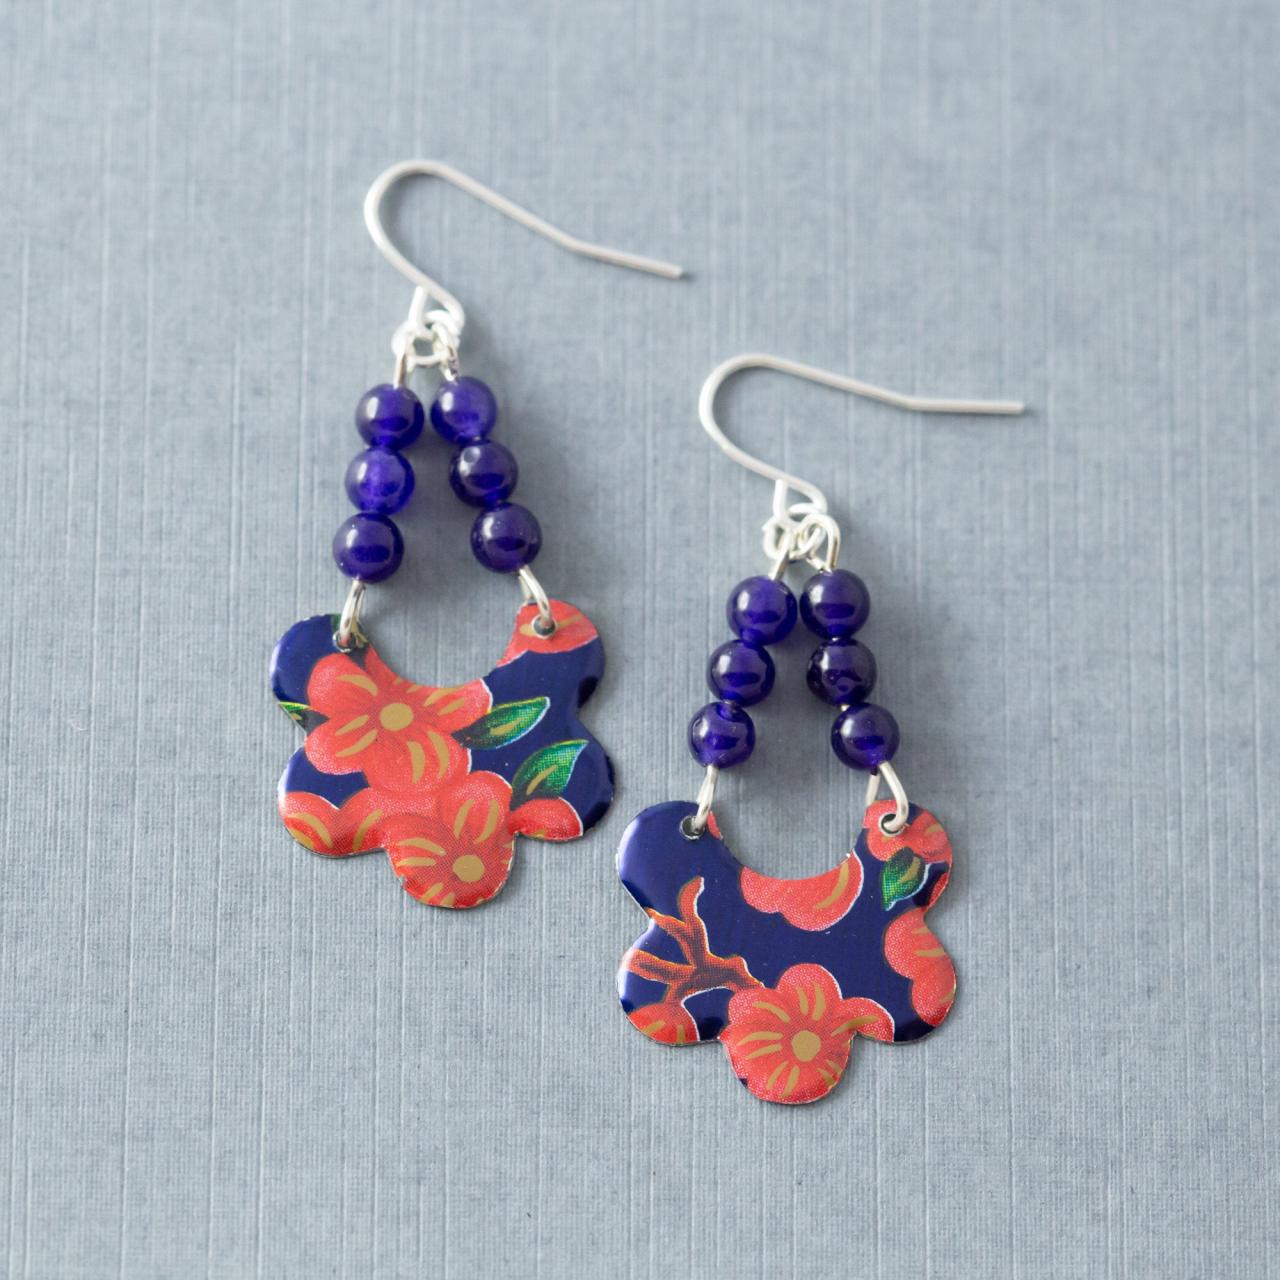 Dark Blue & Pink Flower Earrings, Tin Earrings, Floral Earrings, Boho Earrings, Tin Jewelry, Bohemian Earrings